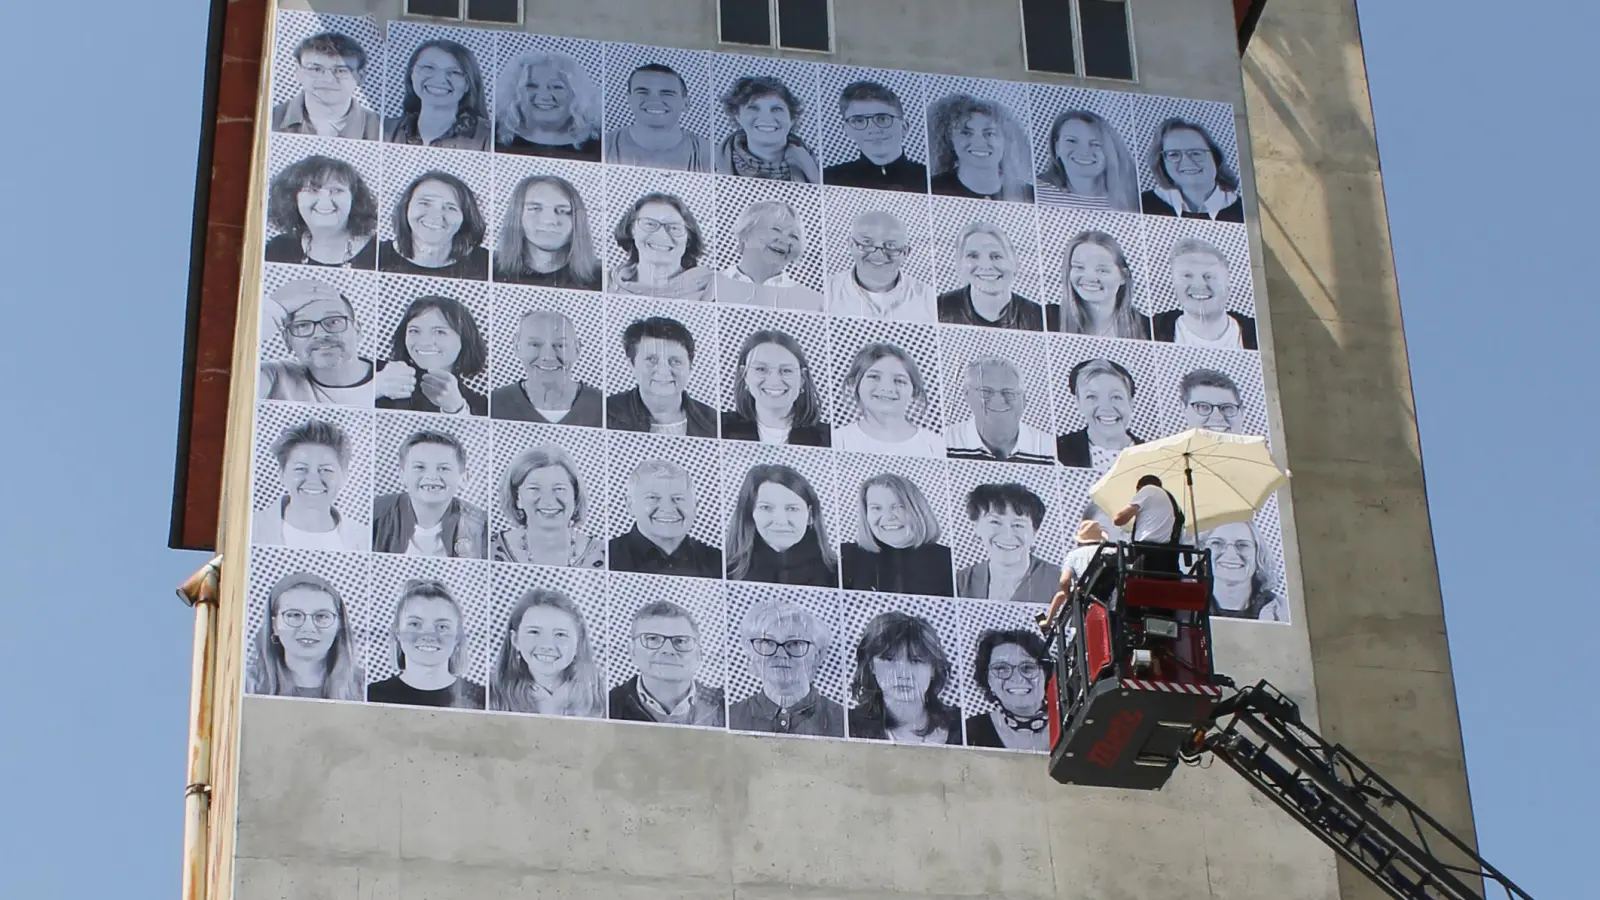 150 Portraits von Menschen aus der Region wurden auf den Turm von Landhandel Reitberger an der Donauwörther Straße in Aichach tapeziert. Weitere knapp 40 der 1,5 Meter hohen Portraits sind ab Freitag am San-Depot und am Tandlmarkt zu sehen. (Foto: Wolfgang Glas)